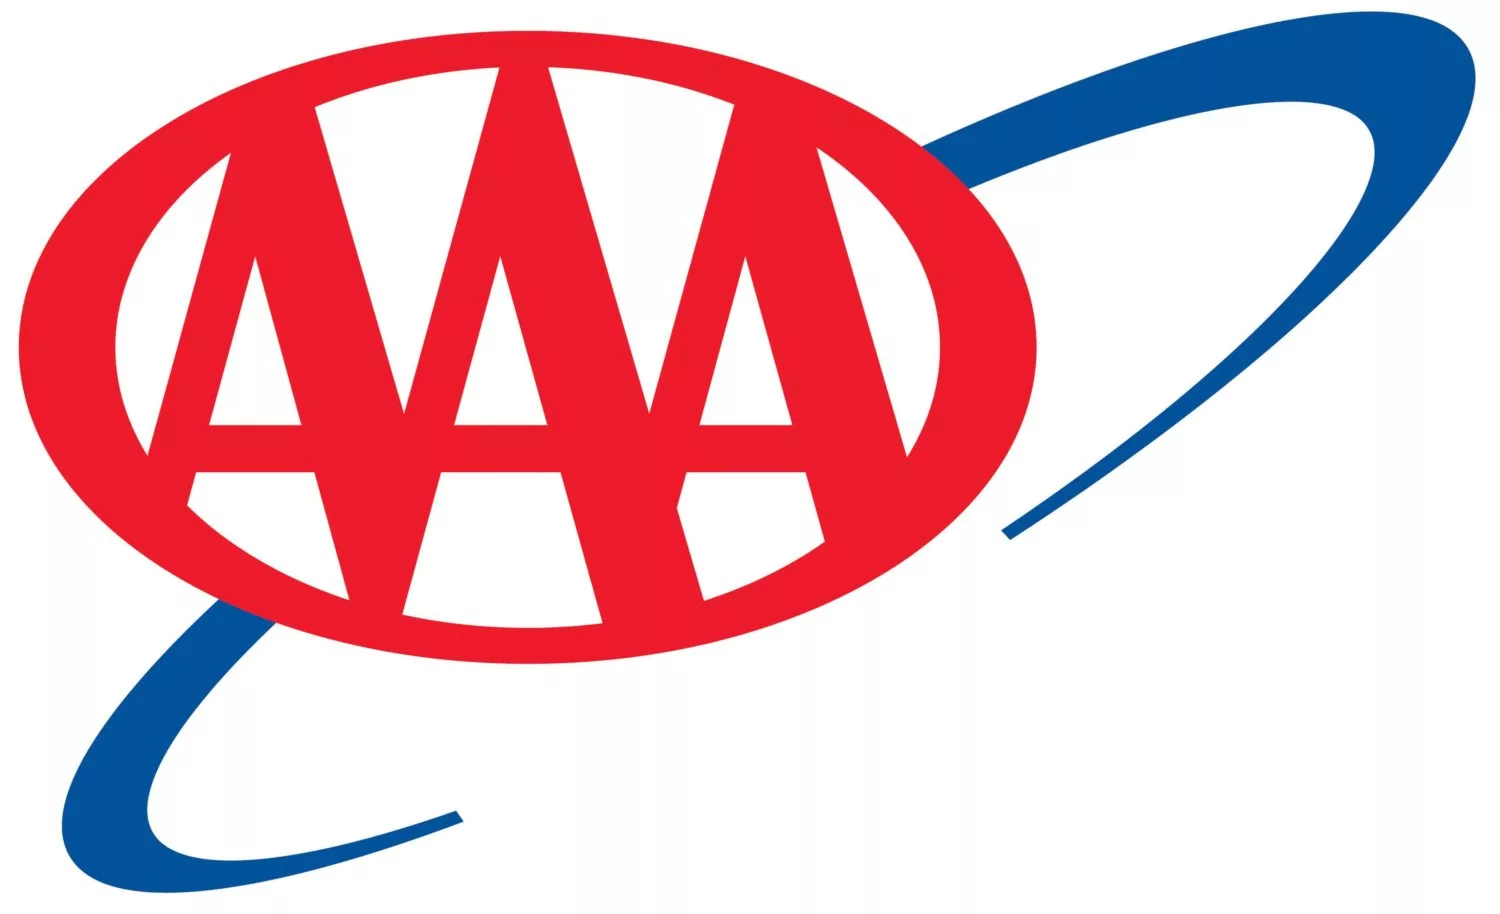 aaa-logo-jpg-6